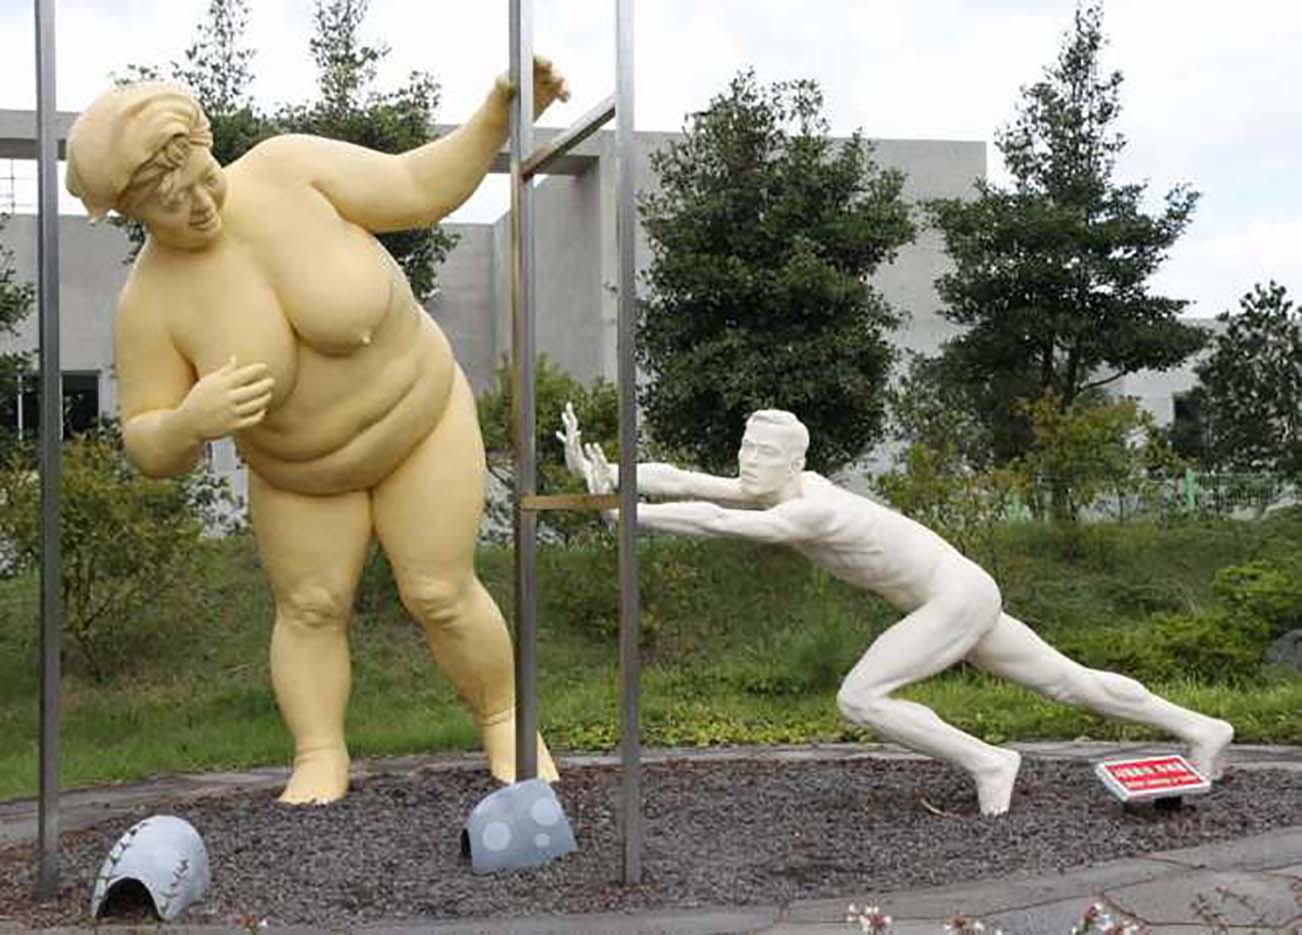 Erotic sculpture’s Park, Jeju Island, South Korea “Love Land - 75“